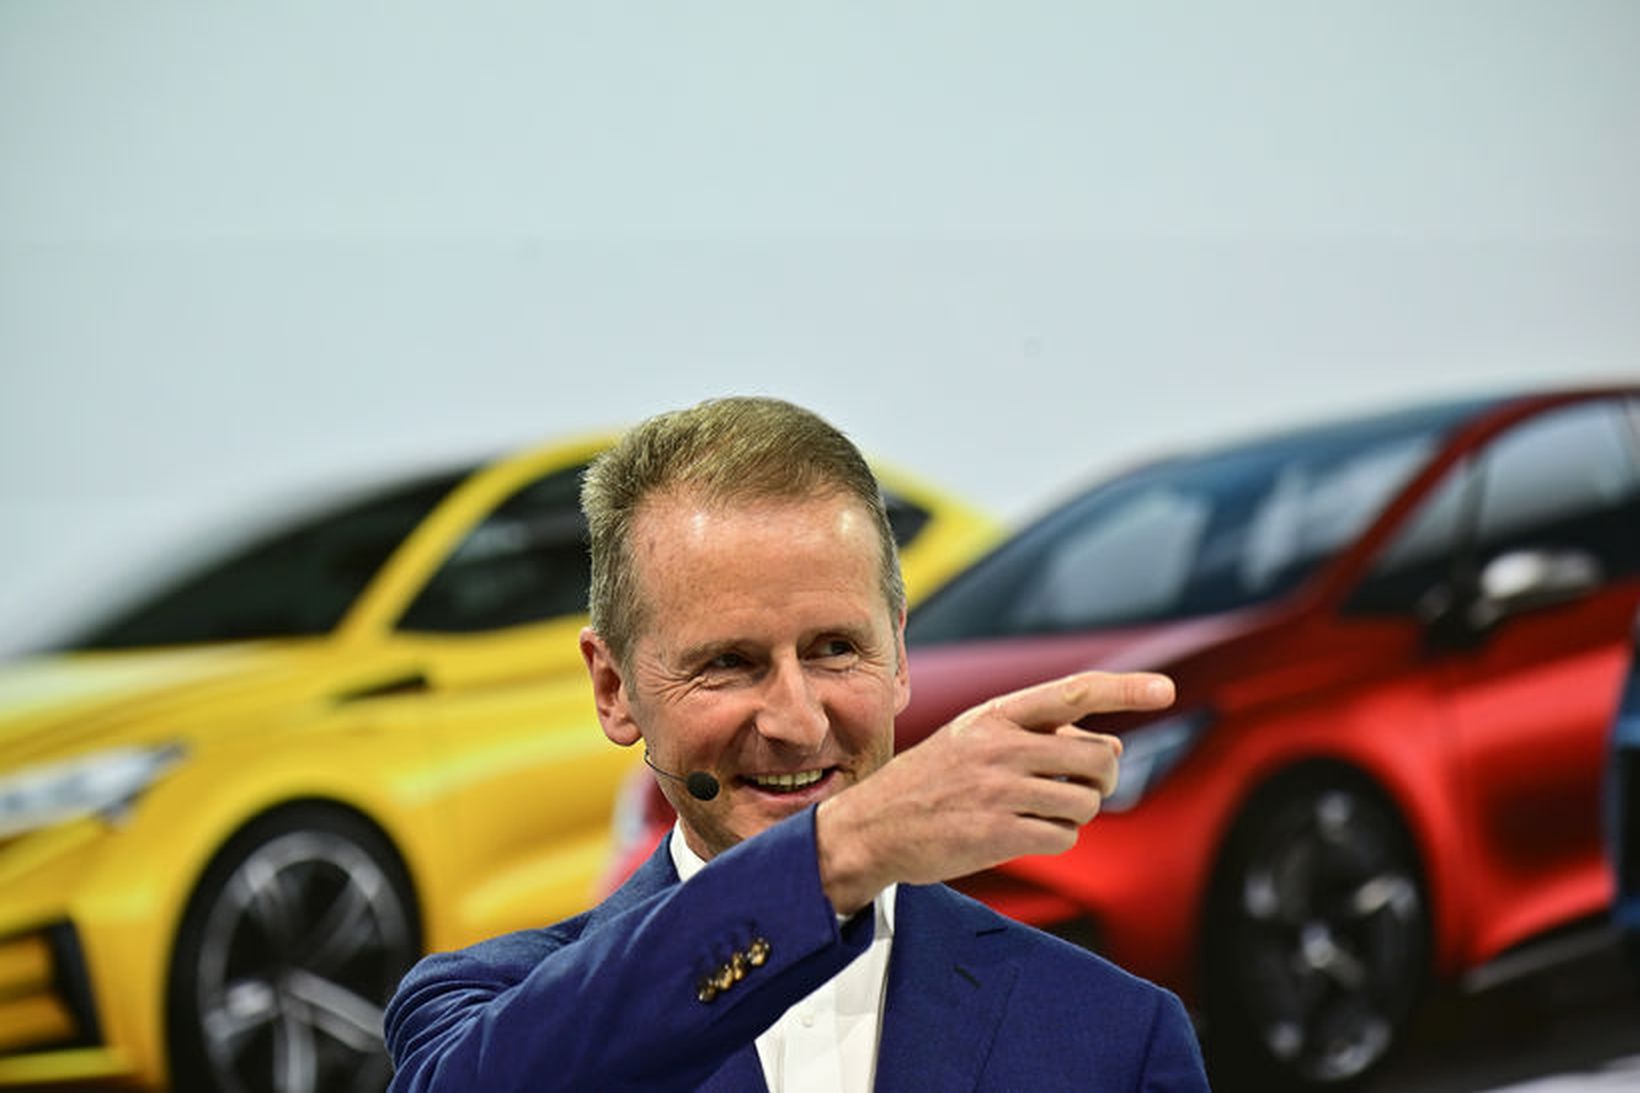 Herbert Diess tók við forstjórastarfinu hjá Volkswagen í fyrra.